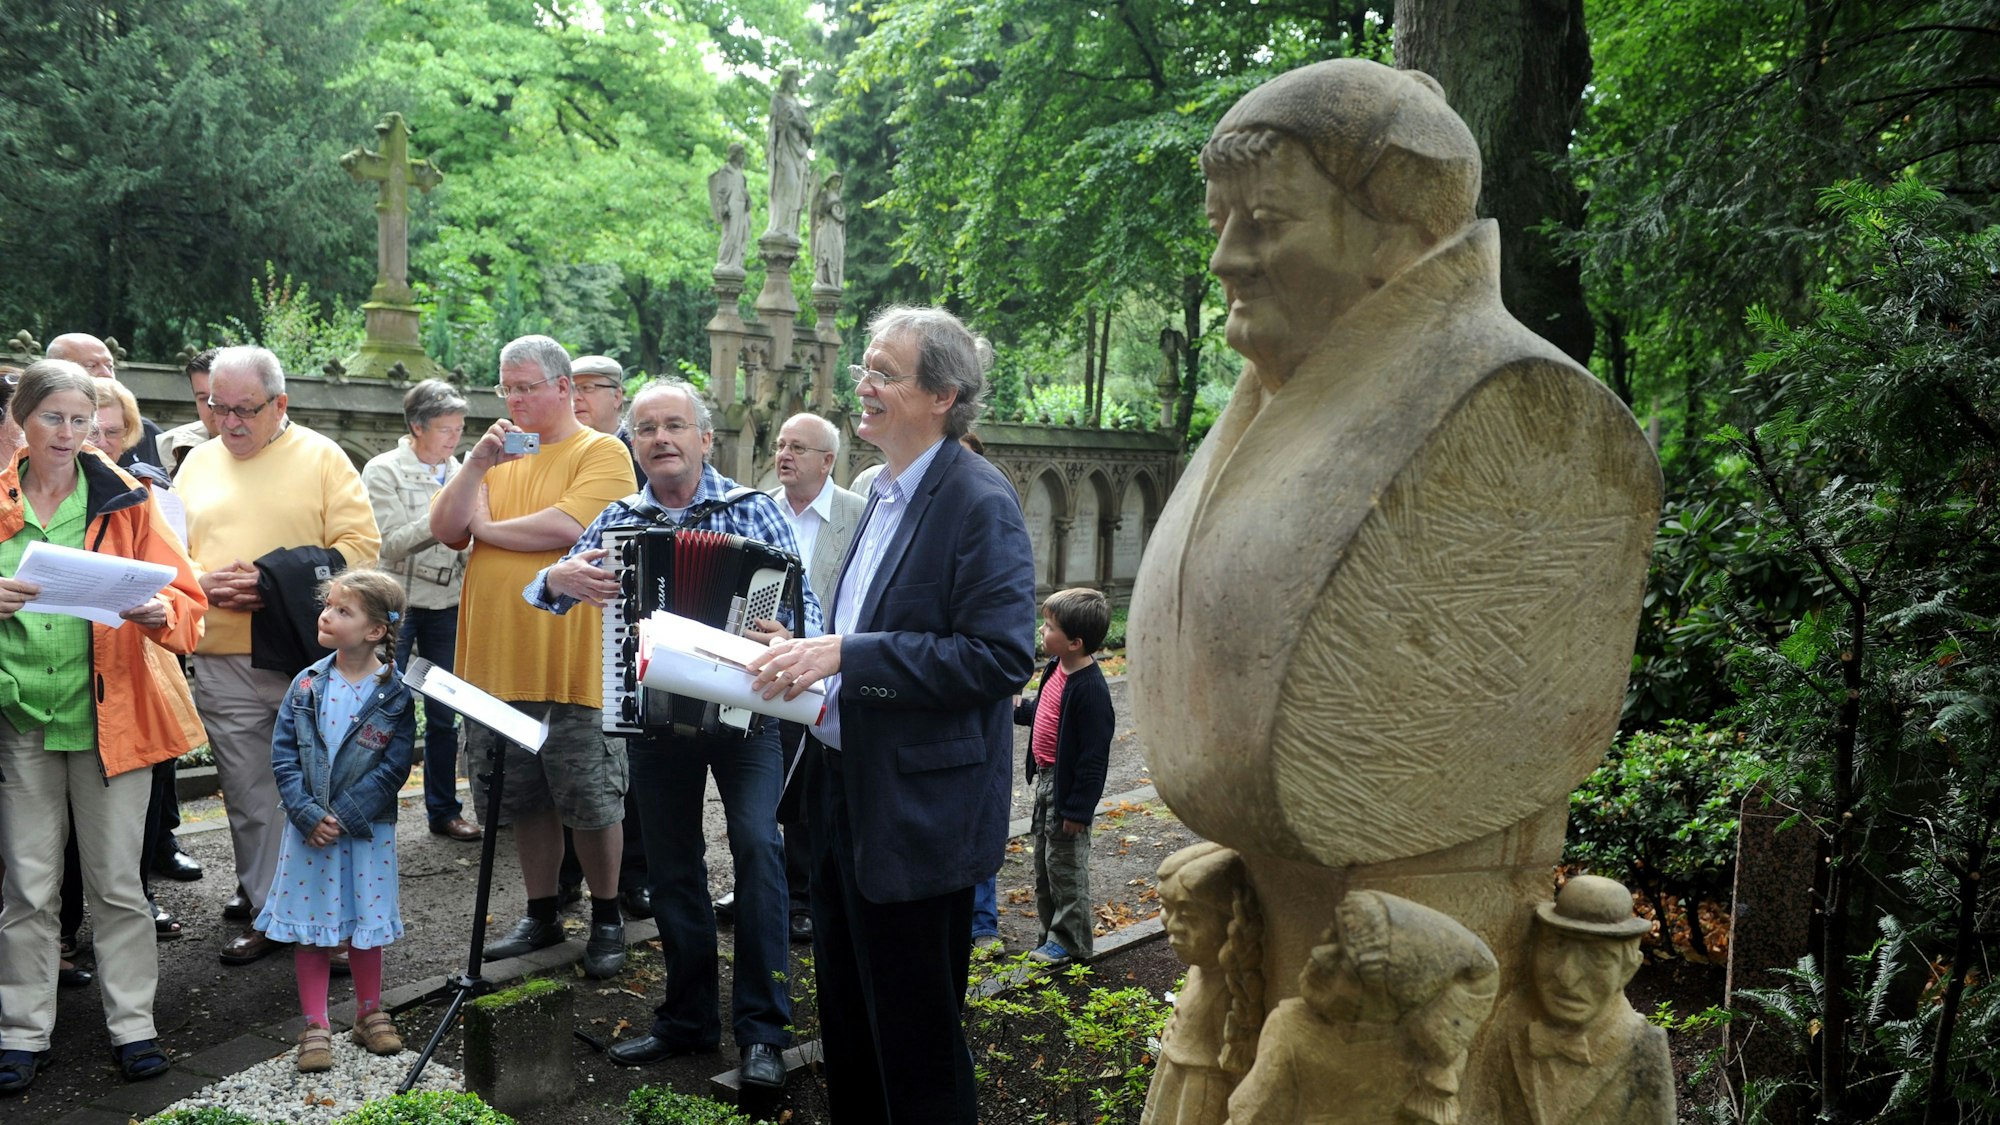 An der Gedenkstätte für Johann Christoph Winters, den Gründer des Hänneschen-Theaters, auf dem Melatenfriedhof haben sich mehrere Menschen versammelt. Zu sehen ist auch unser Autor Wolfgang Oelsner, der eine Rede hält.